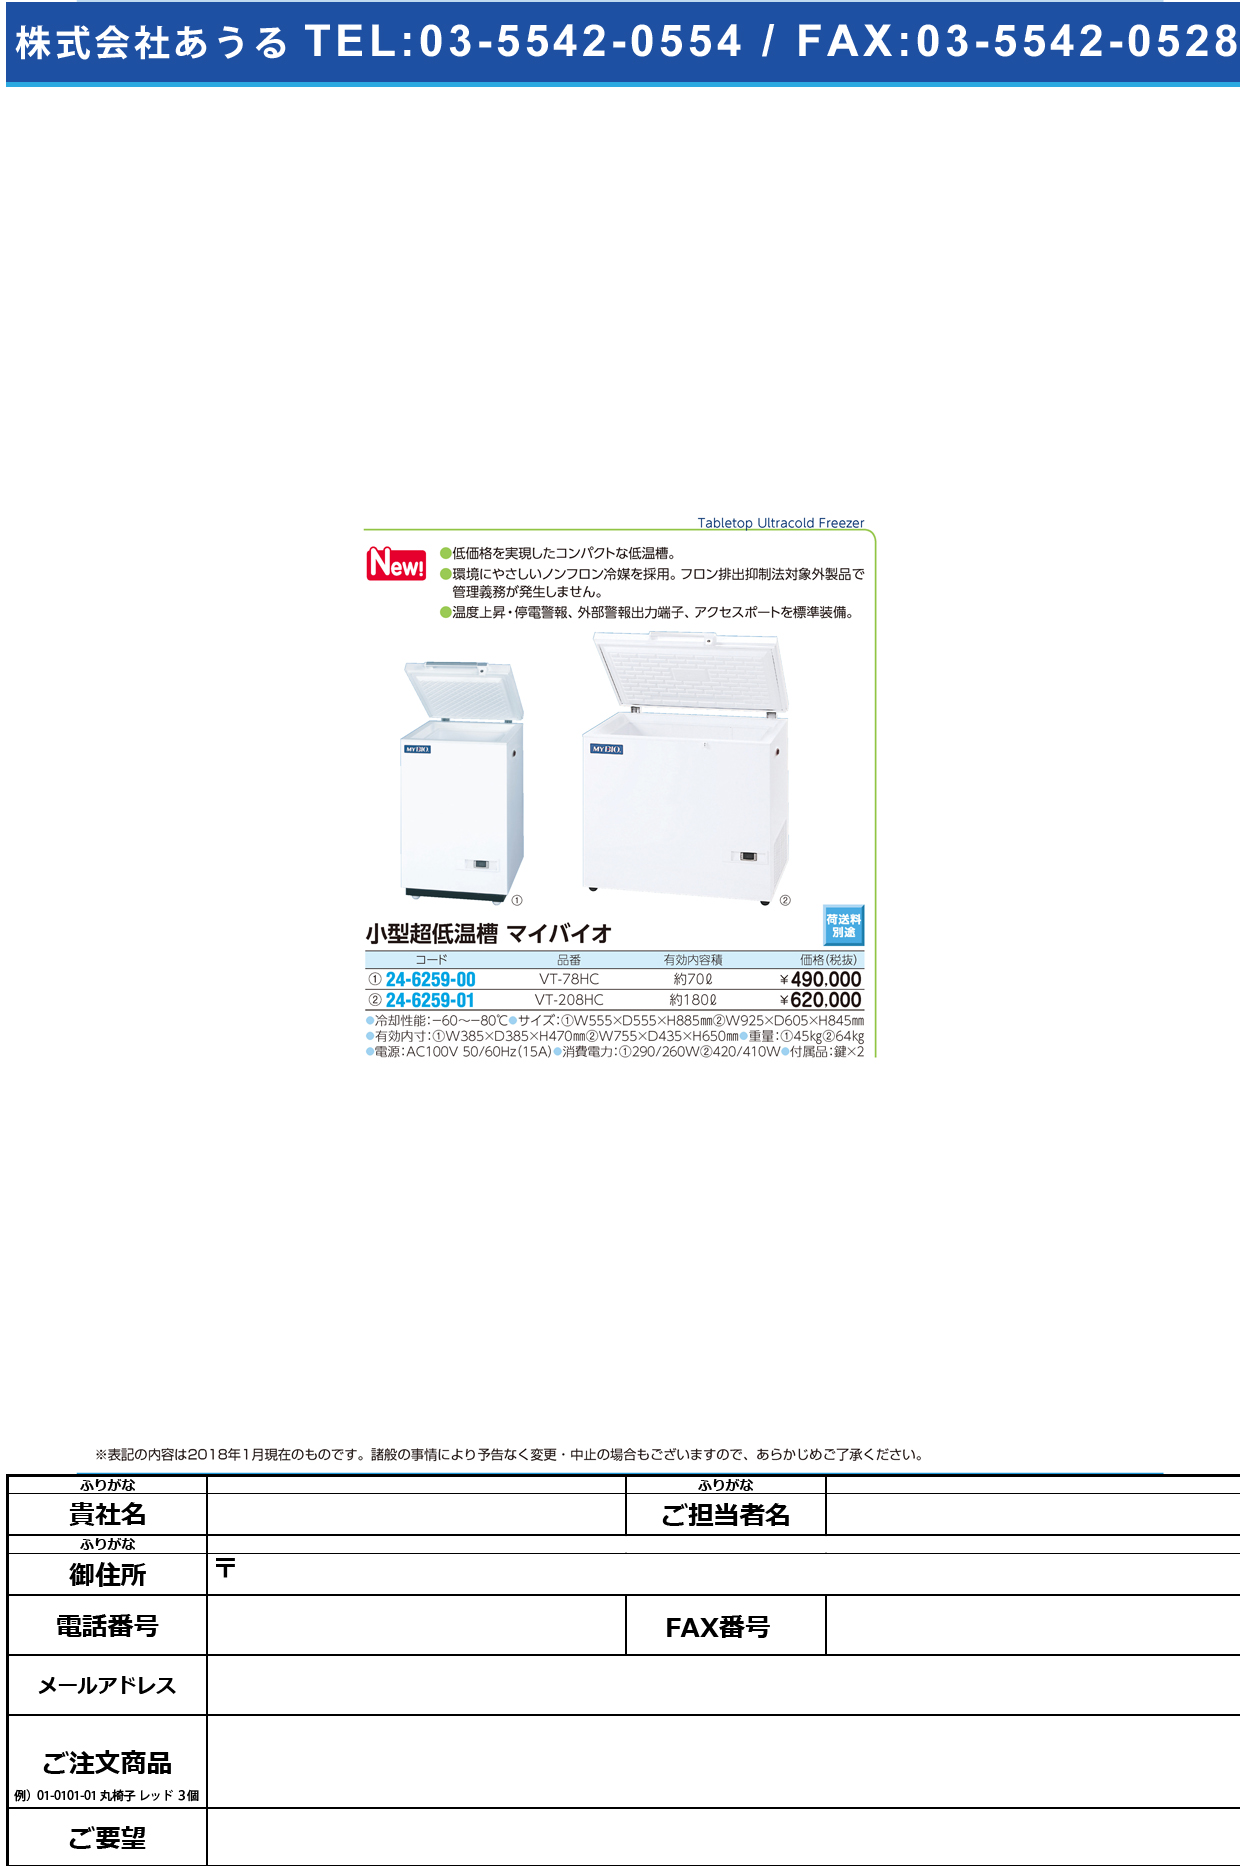 (24-6259-01)小型超低温槽マイバイオ VT-208HC(180L) ｺｶﾞﾀﾁｮｳﾃｲｵﾝｿｳﾏｲﾊﾞｲｵ(日本フリーザー)【1台単位】【2018年カタログ商品】